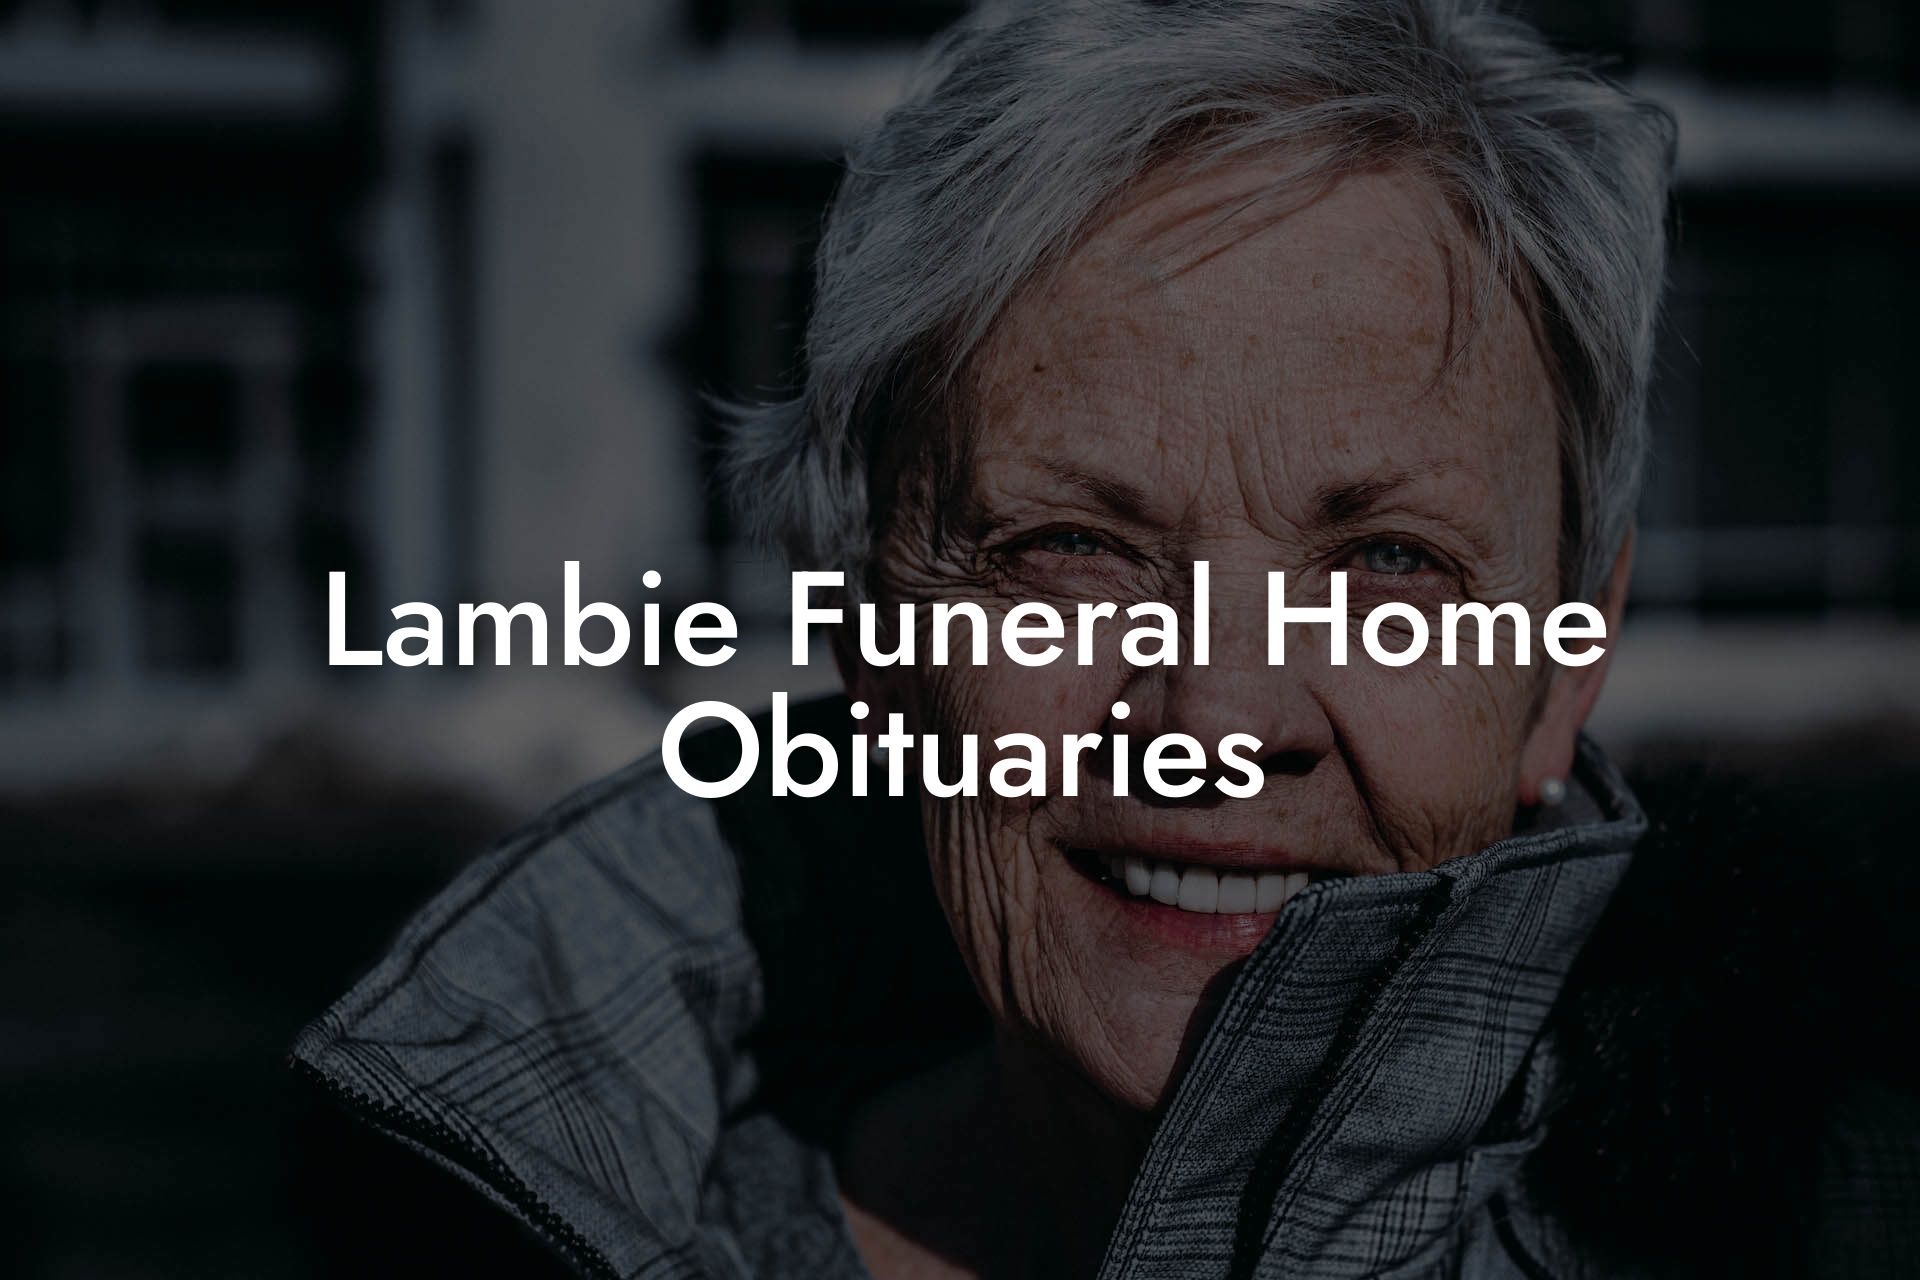 Lambie Funeral Home Obituaries